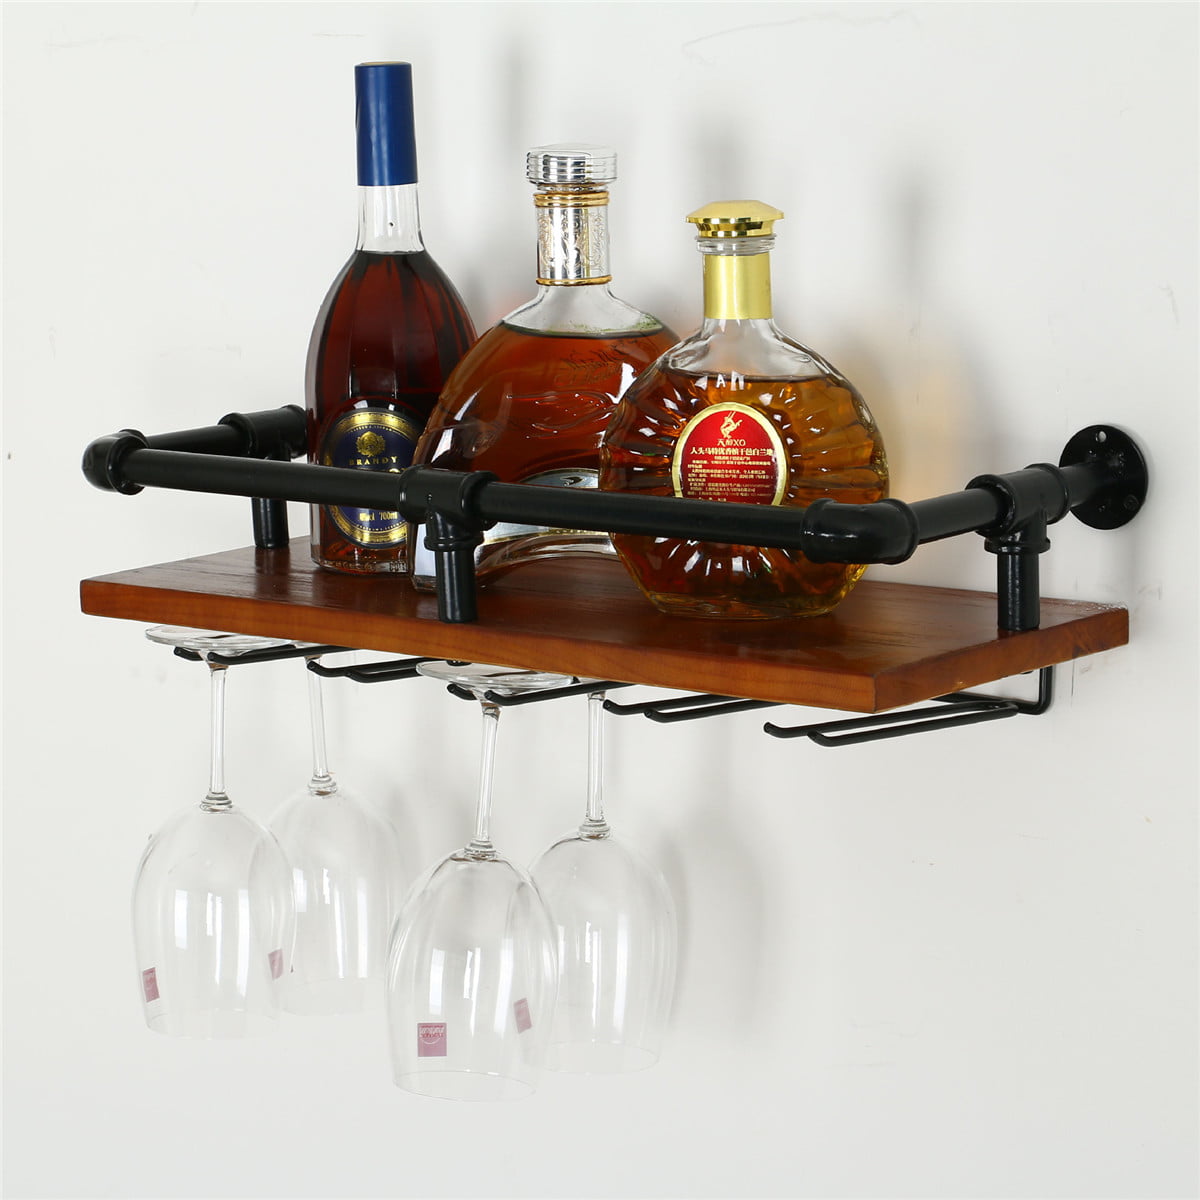 Liquor bottle and cork holder